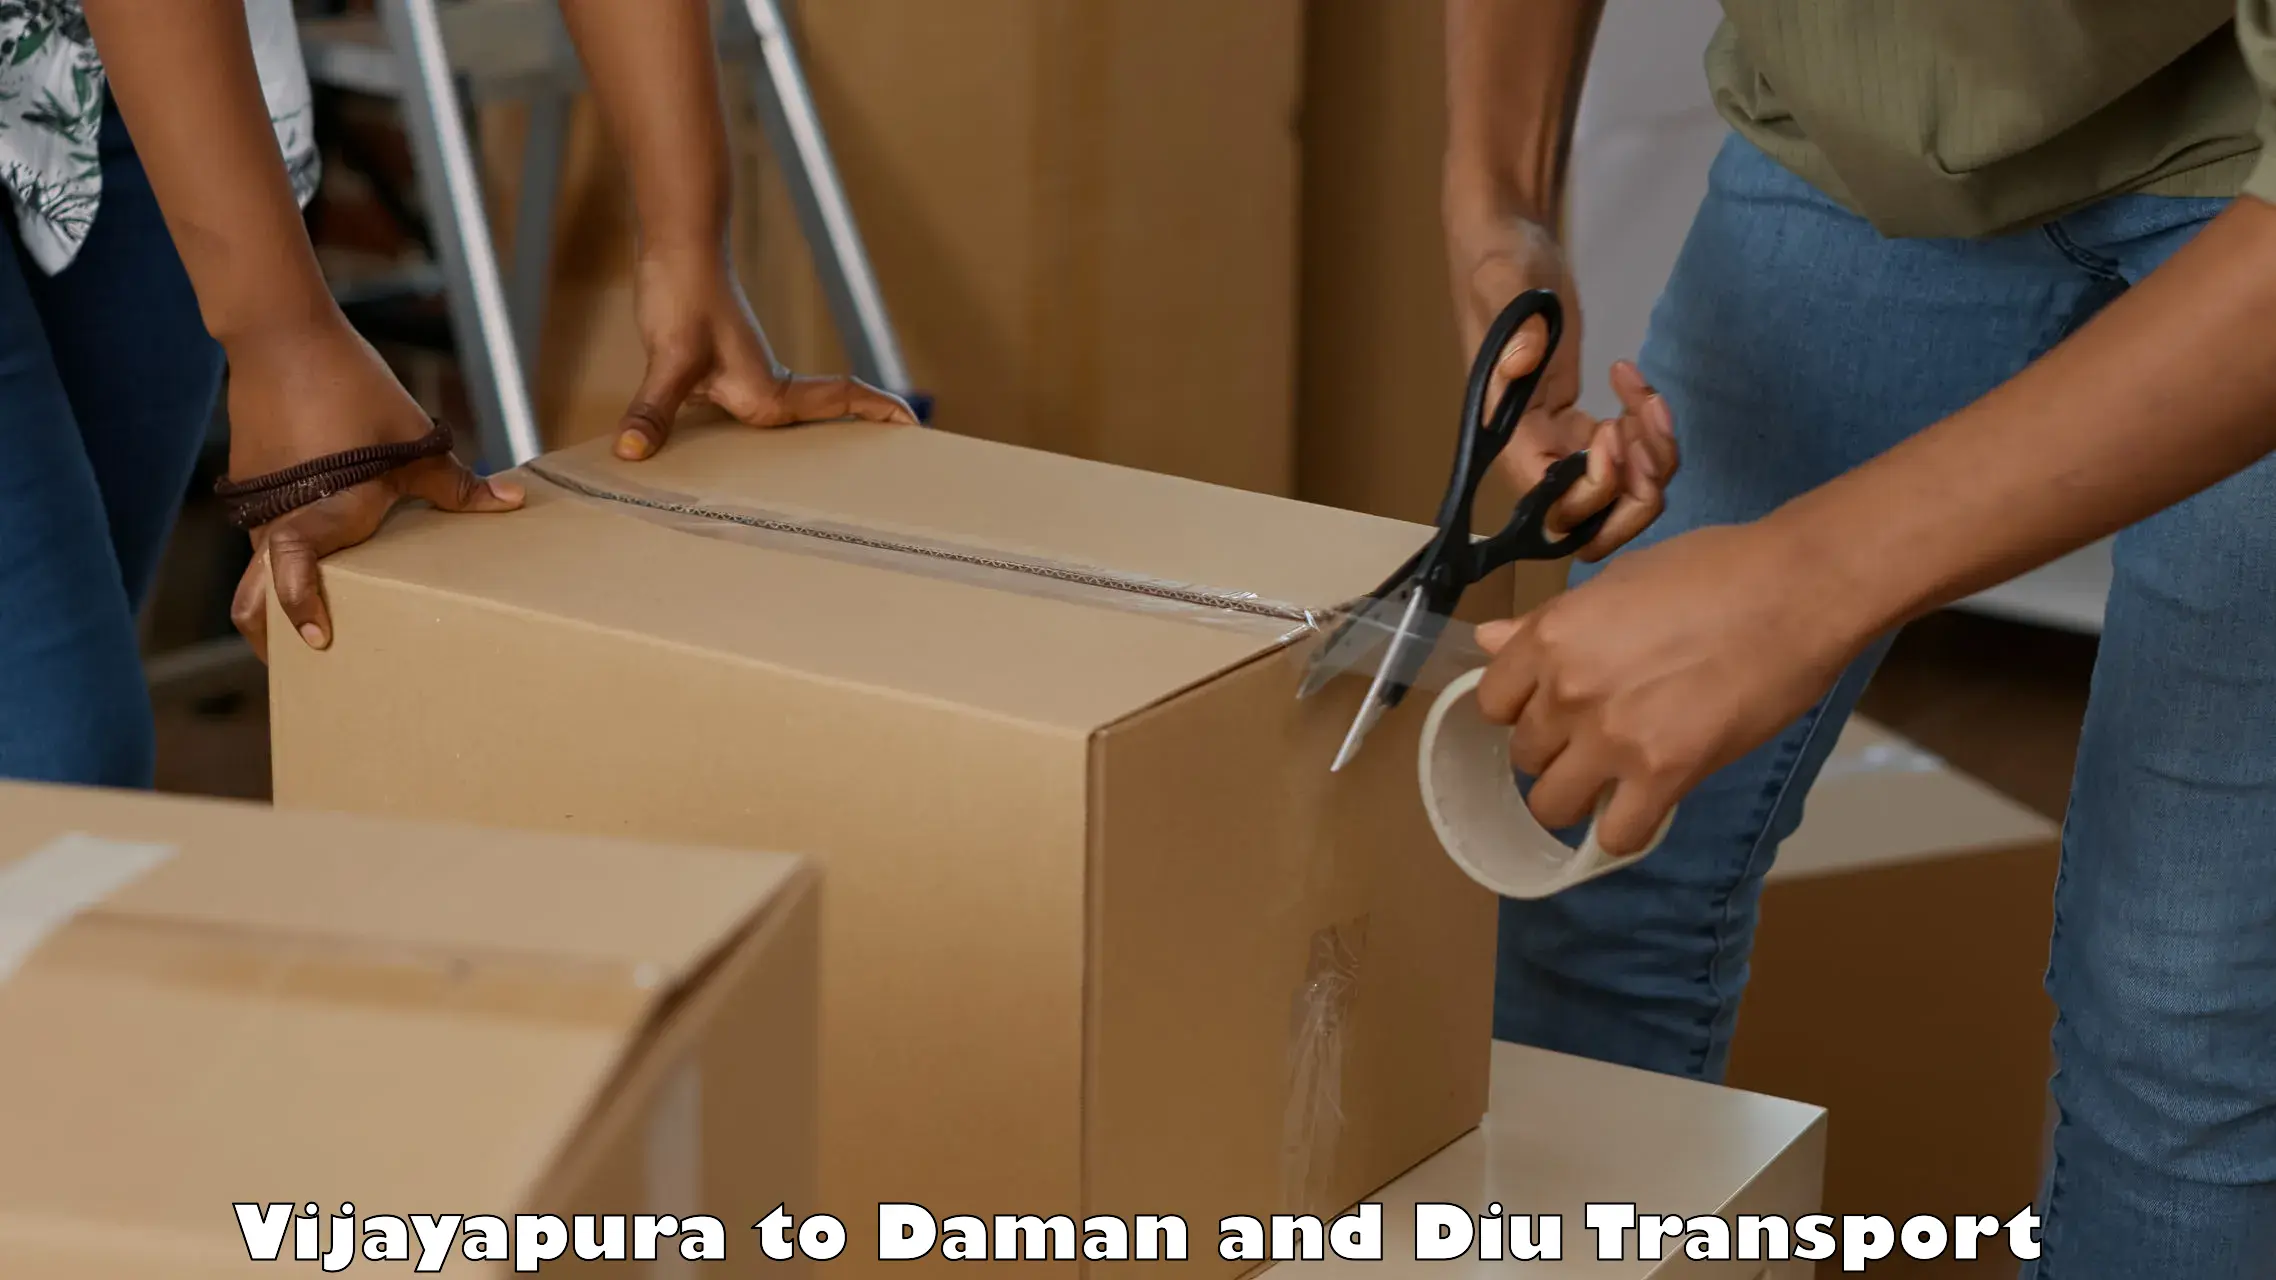 Transport shared services Vijayapura to Daman and Diu